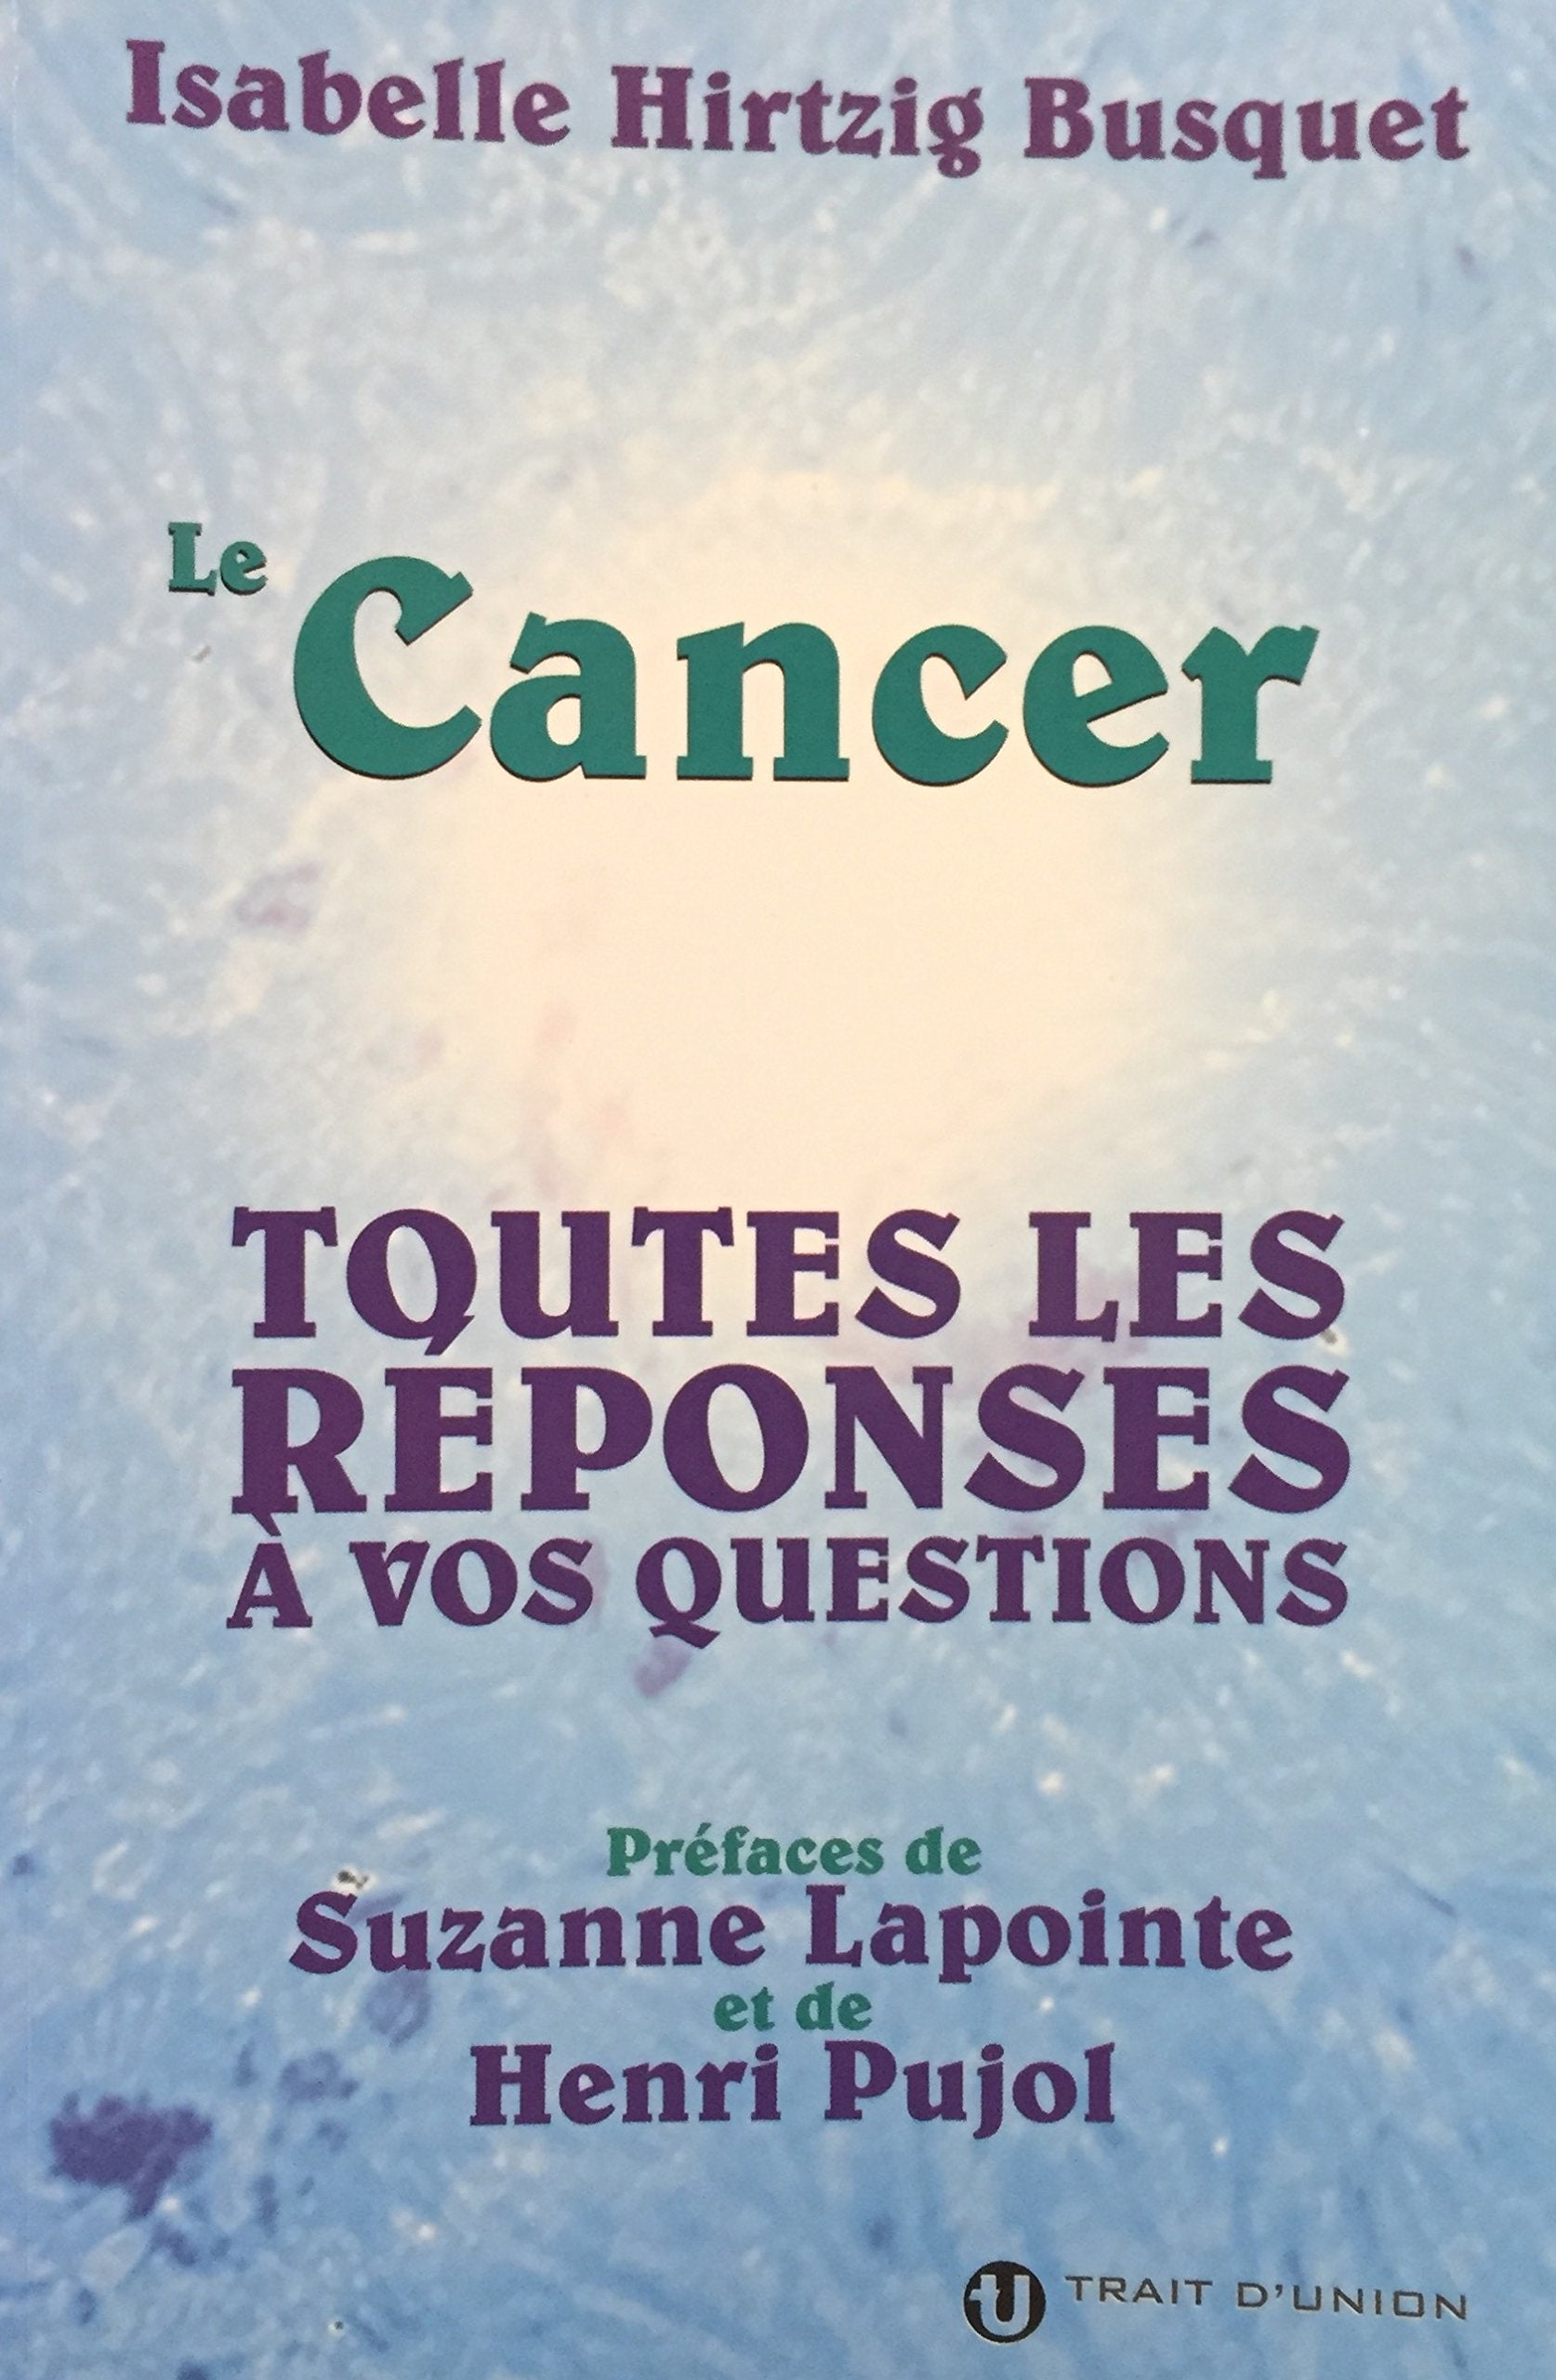 Le cancer : Toutes les réponses à vos questions - Isabelle Hirtzig Busquet